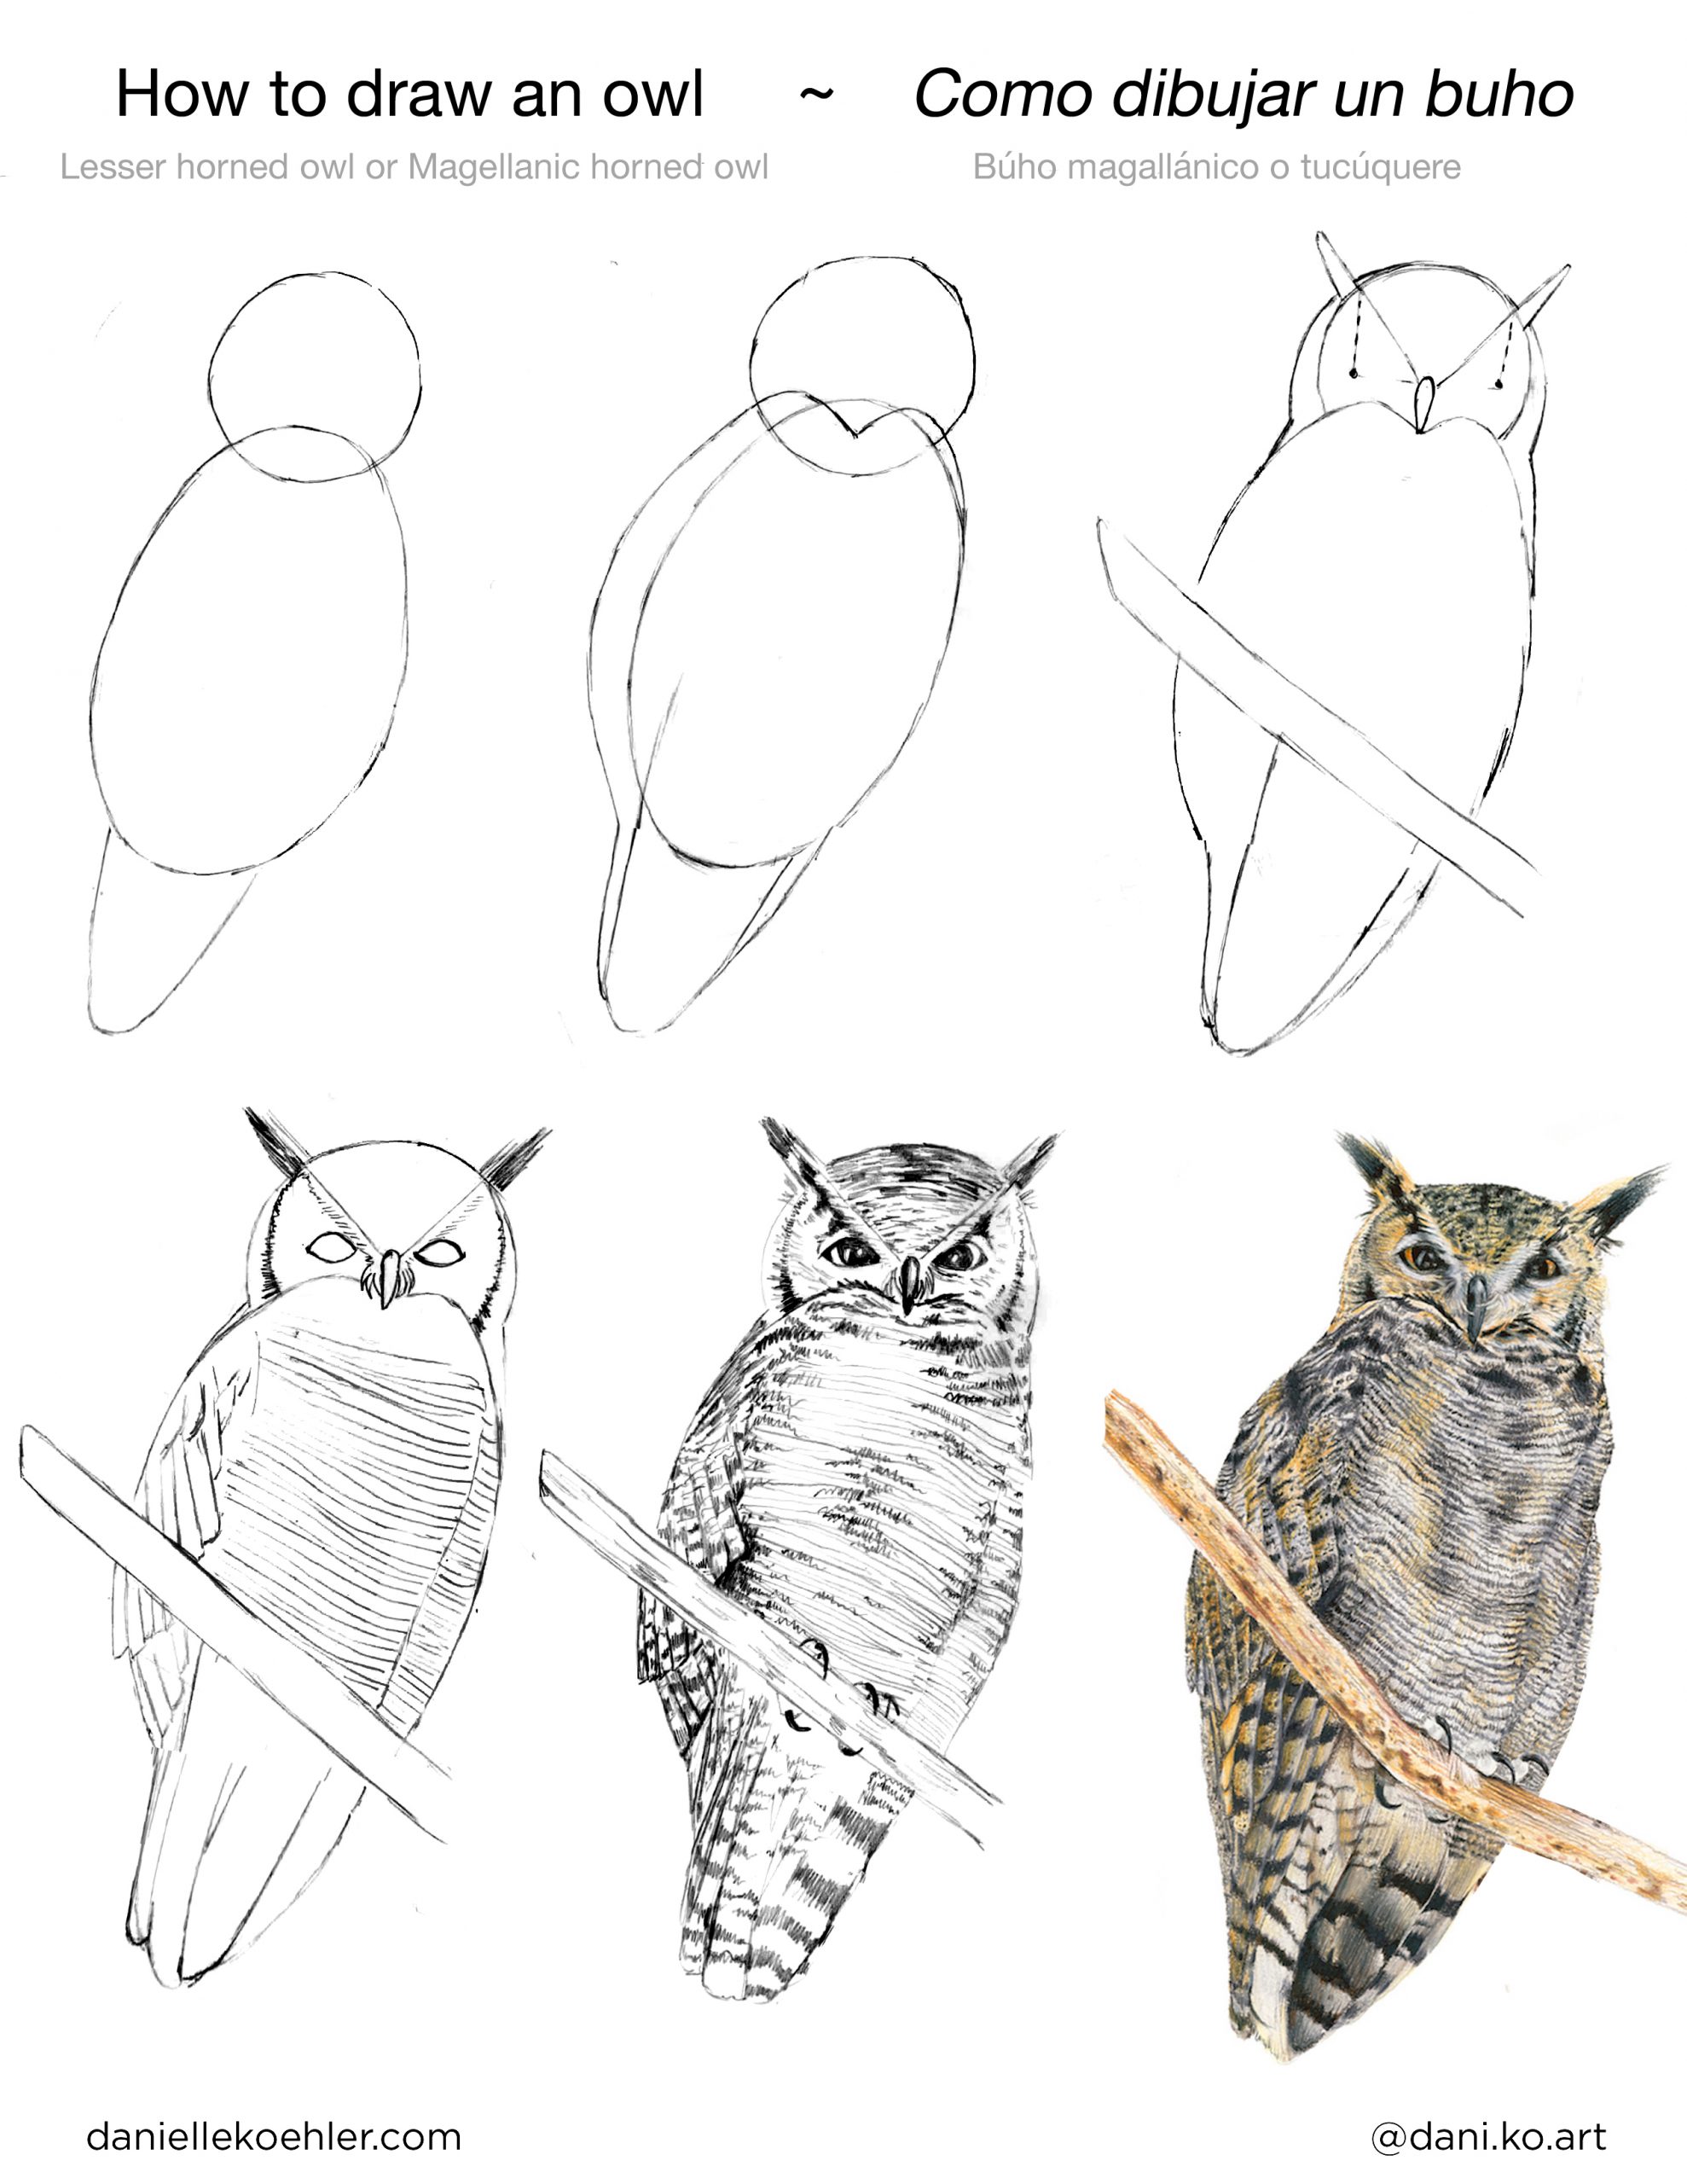 How to draw a puma / Como dibujar un puma